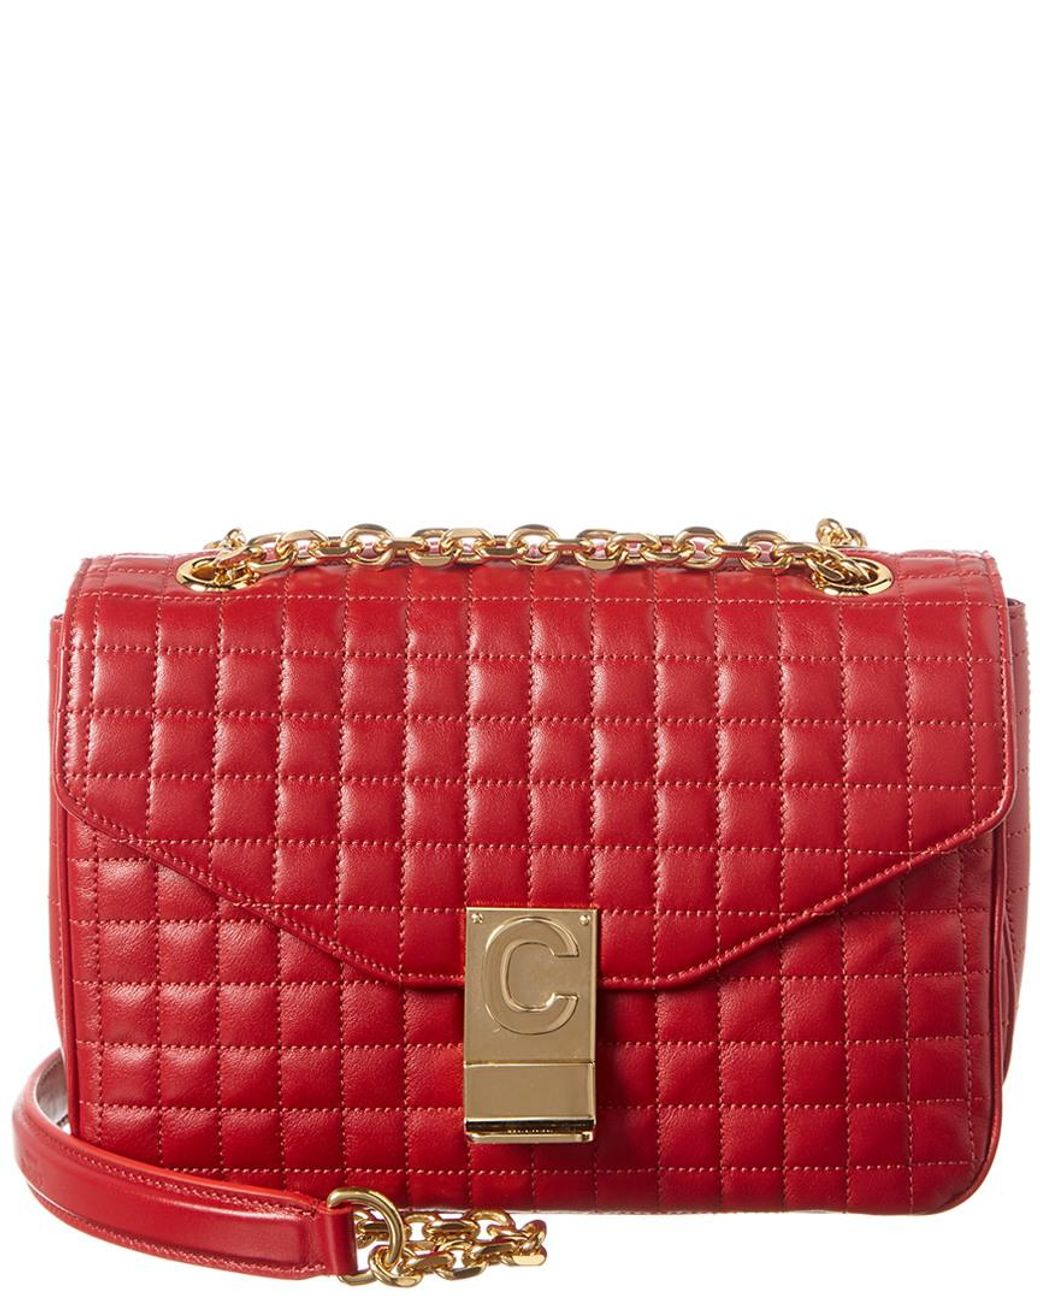 Celine Medium C Quilted Leather Shoulder Bag in Red | Lyst